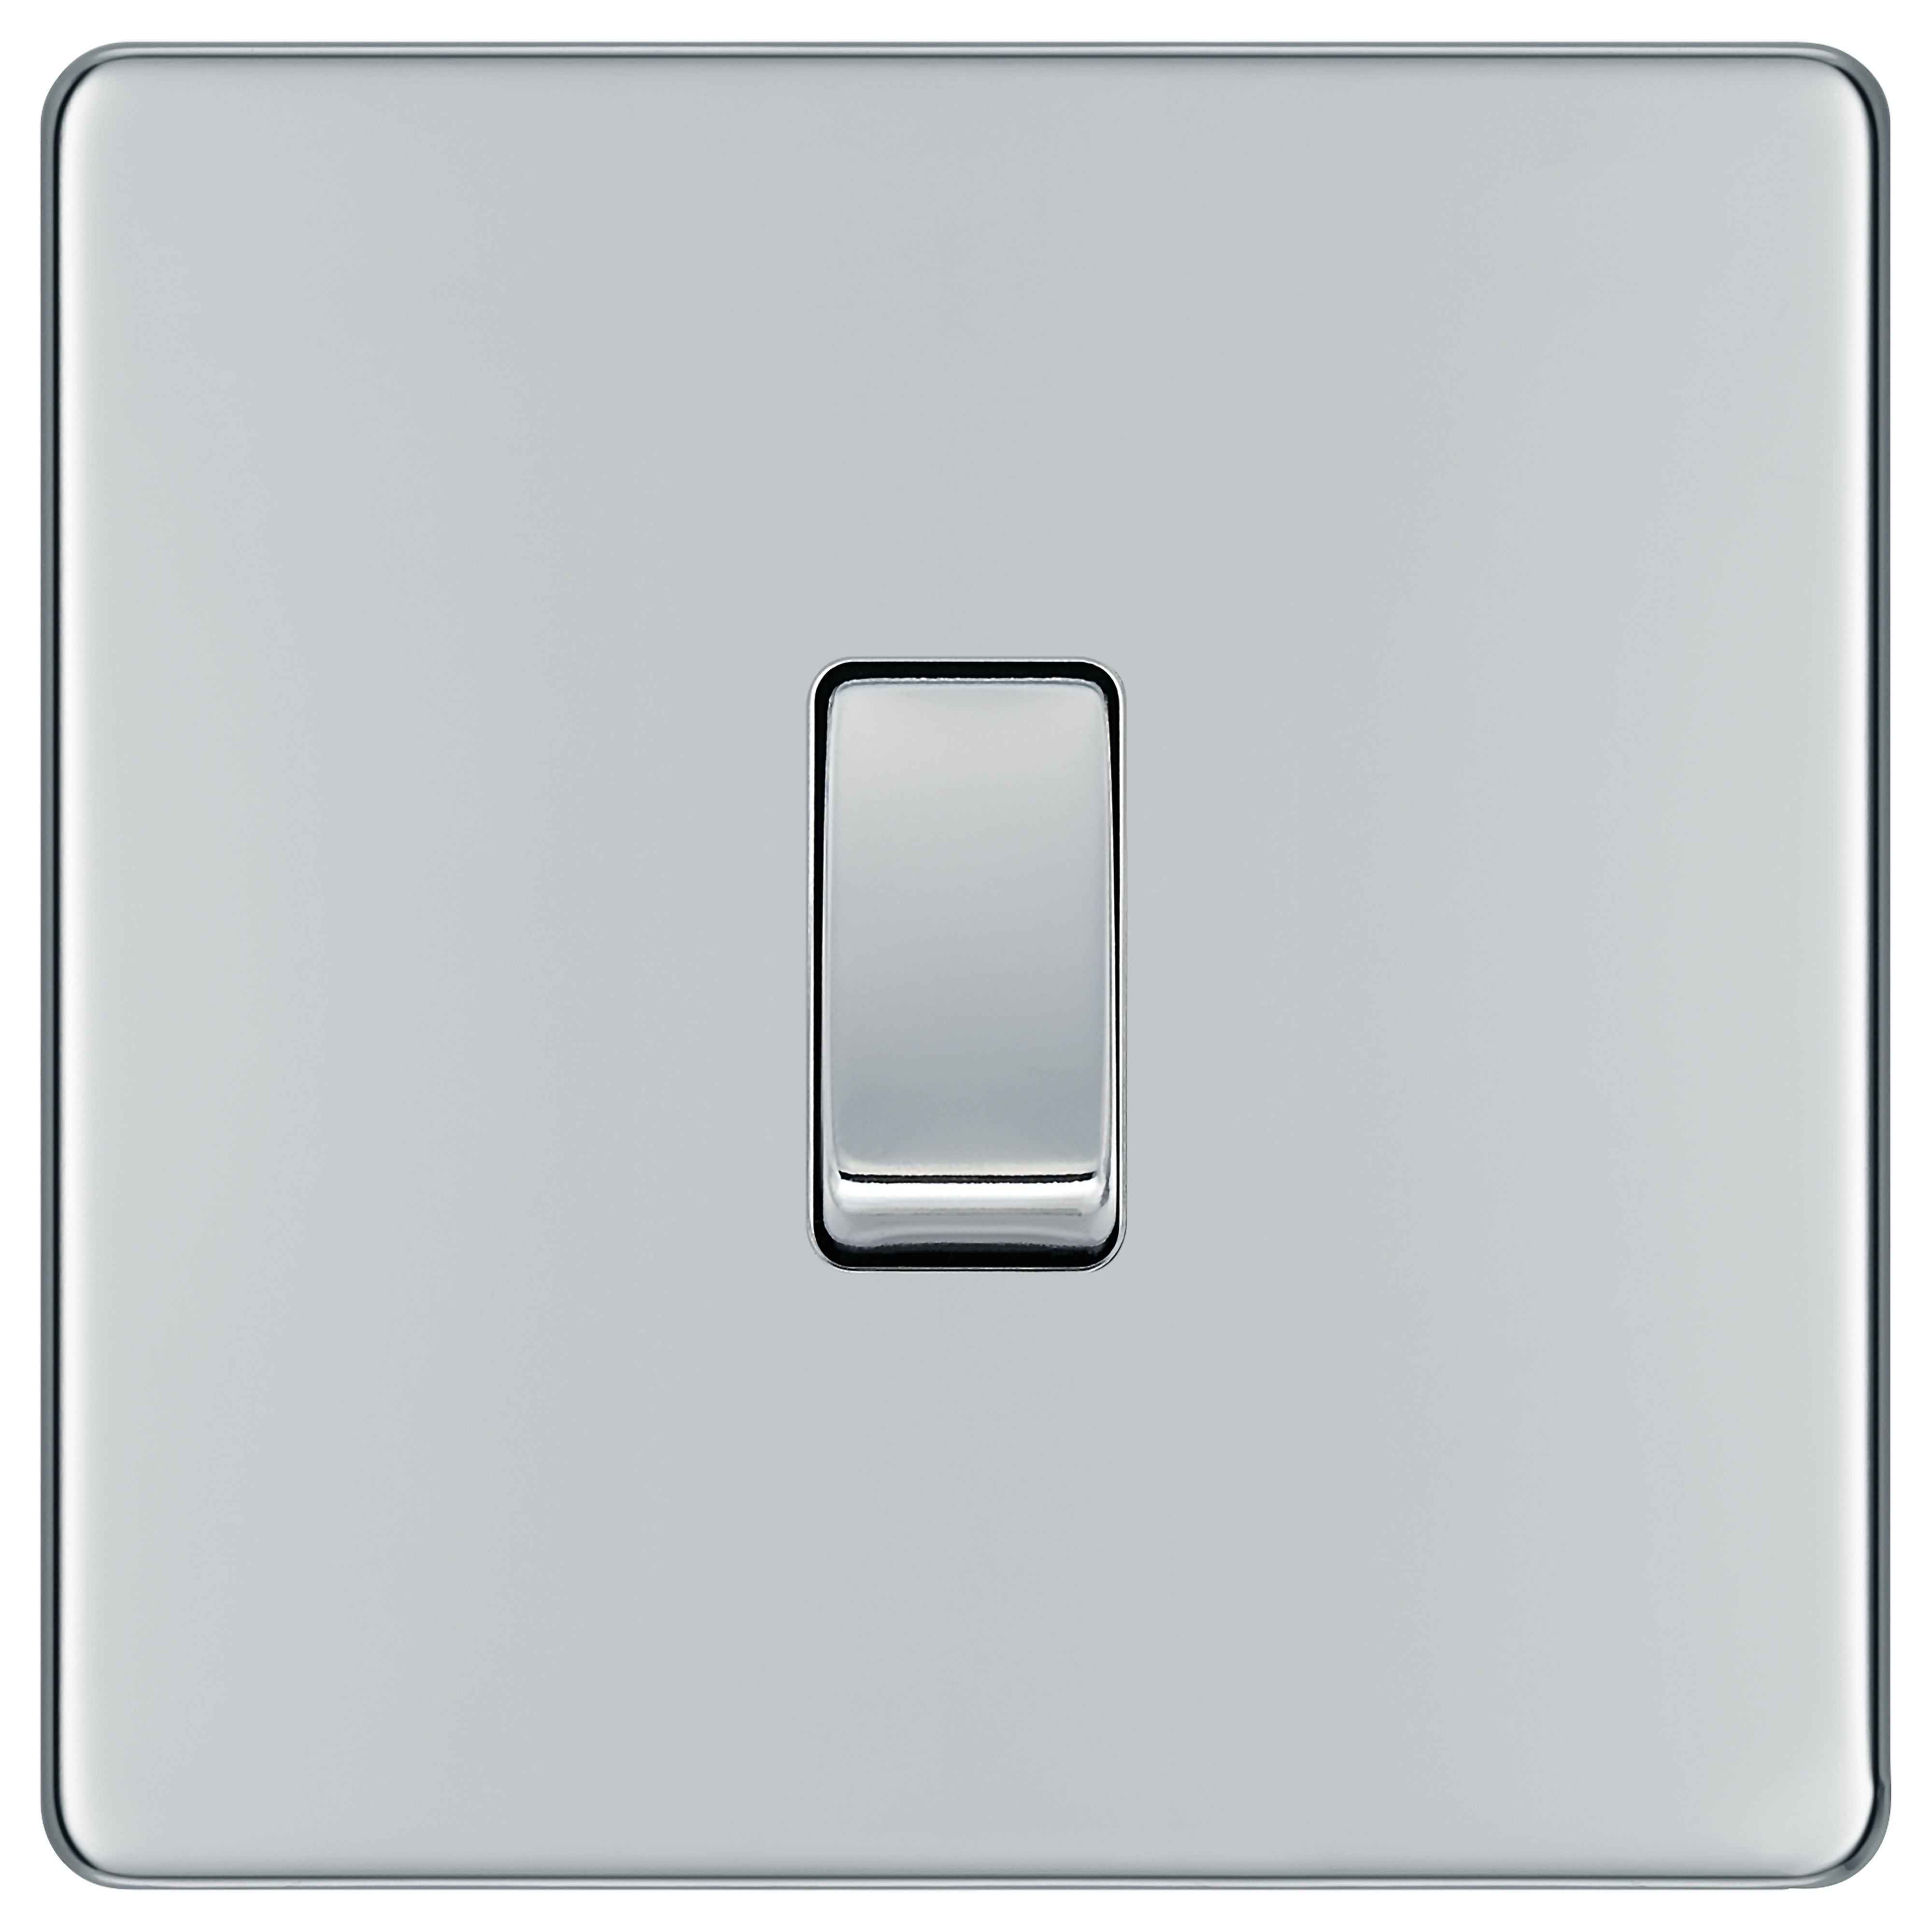 BG 10Ax Screwless Flat Plate Single Switch 2 Way - Polished Chrome